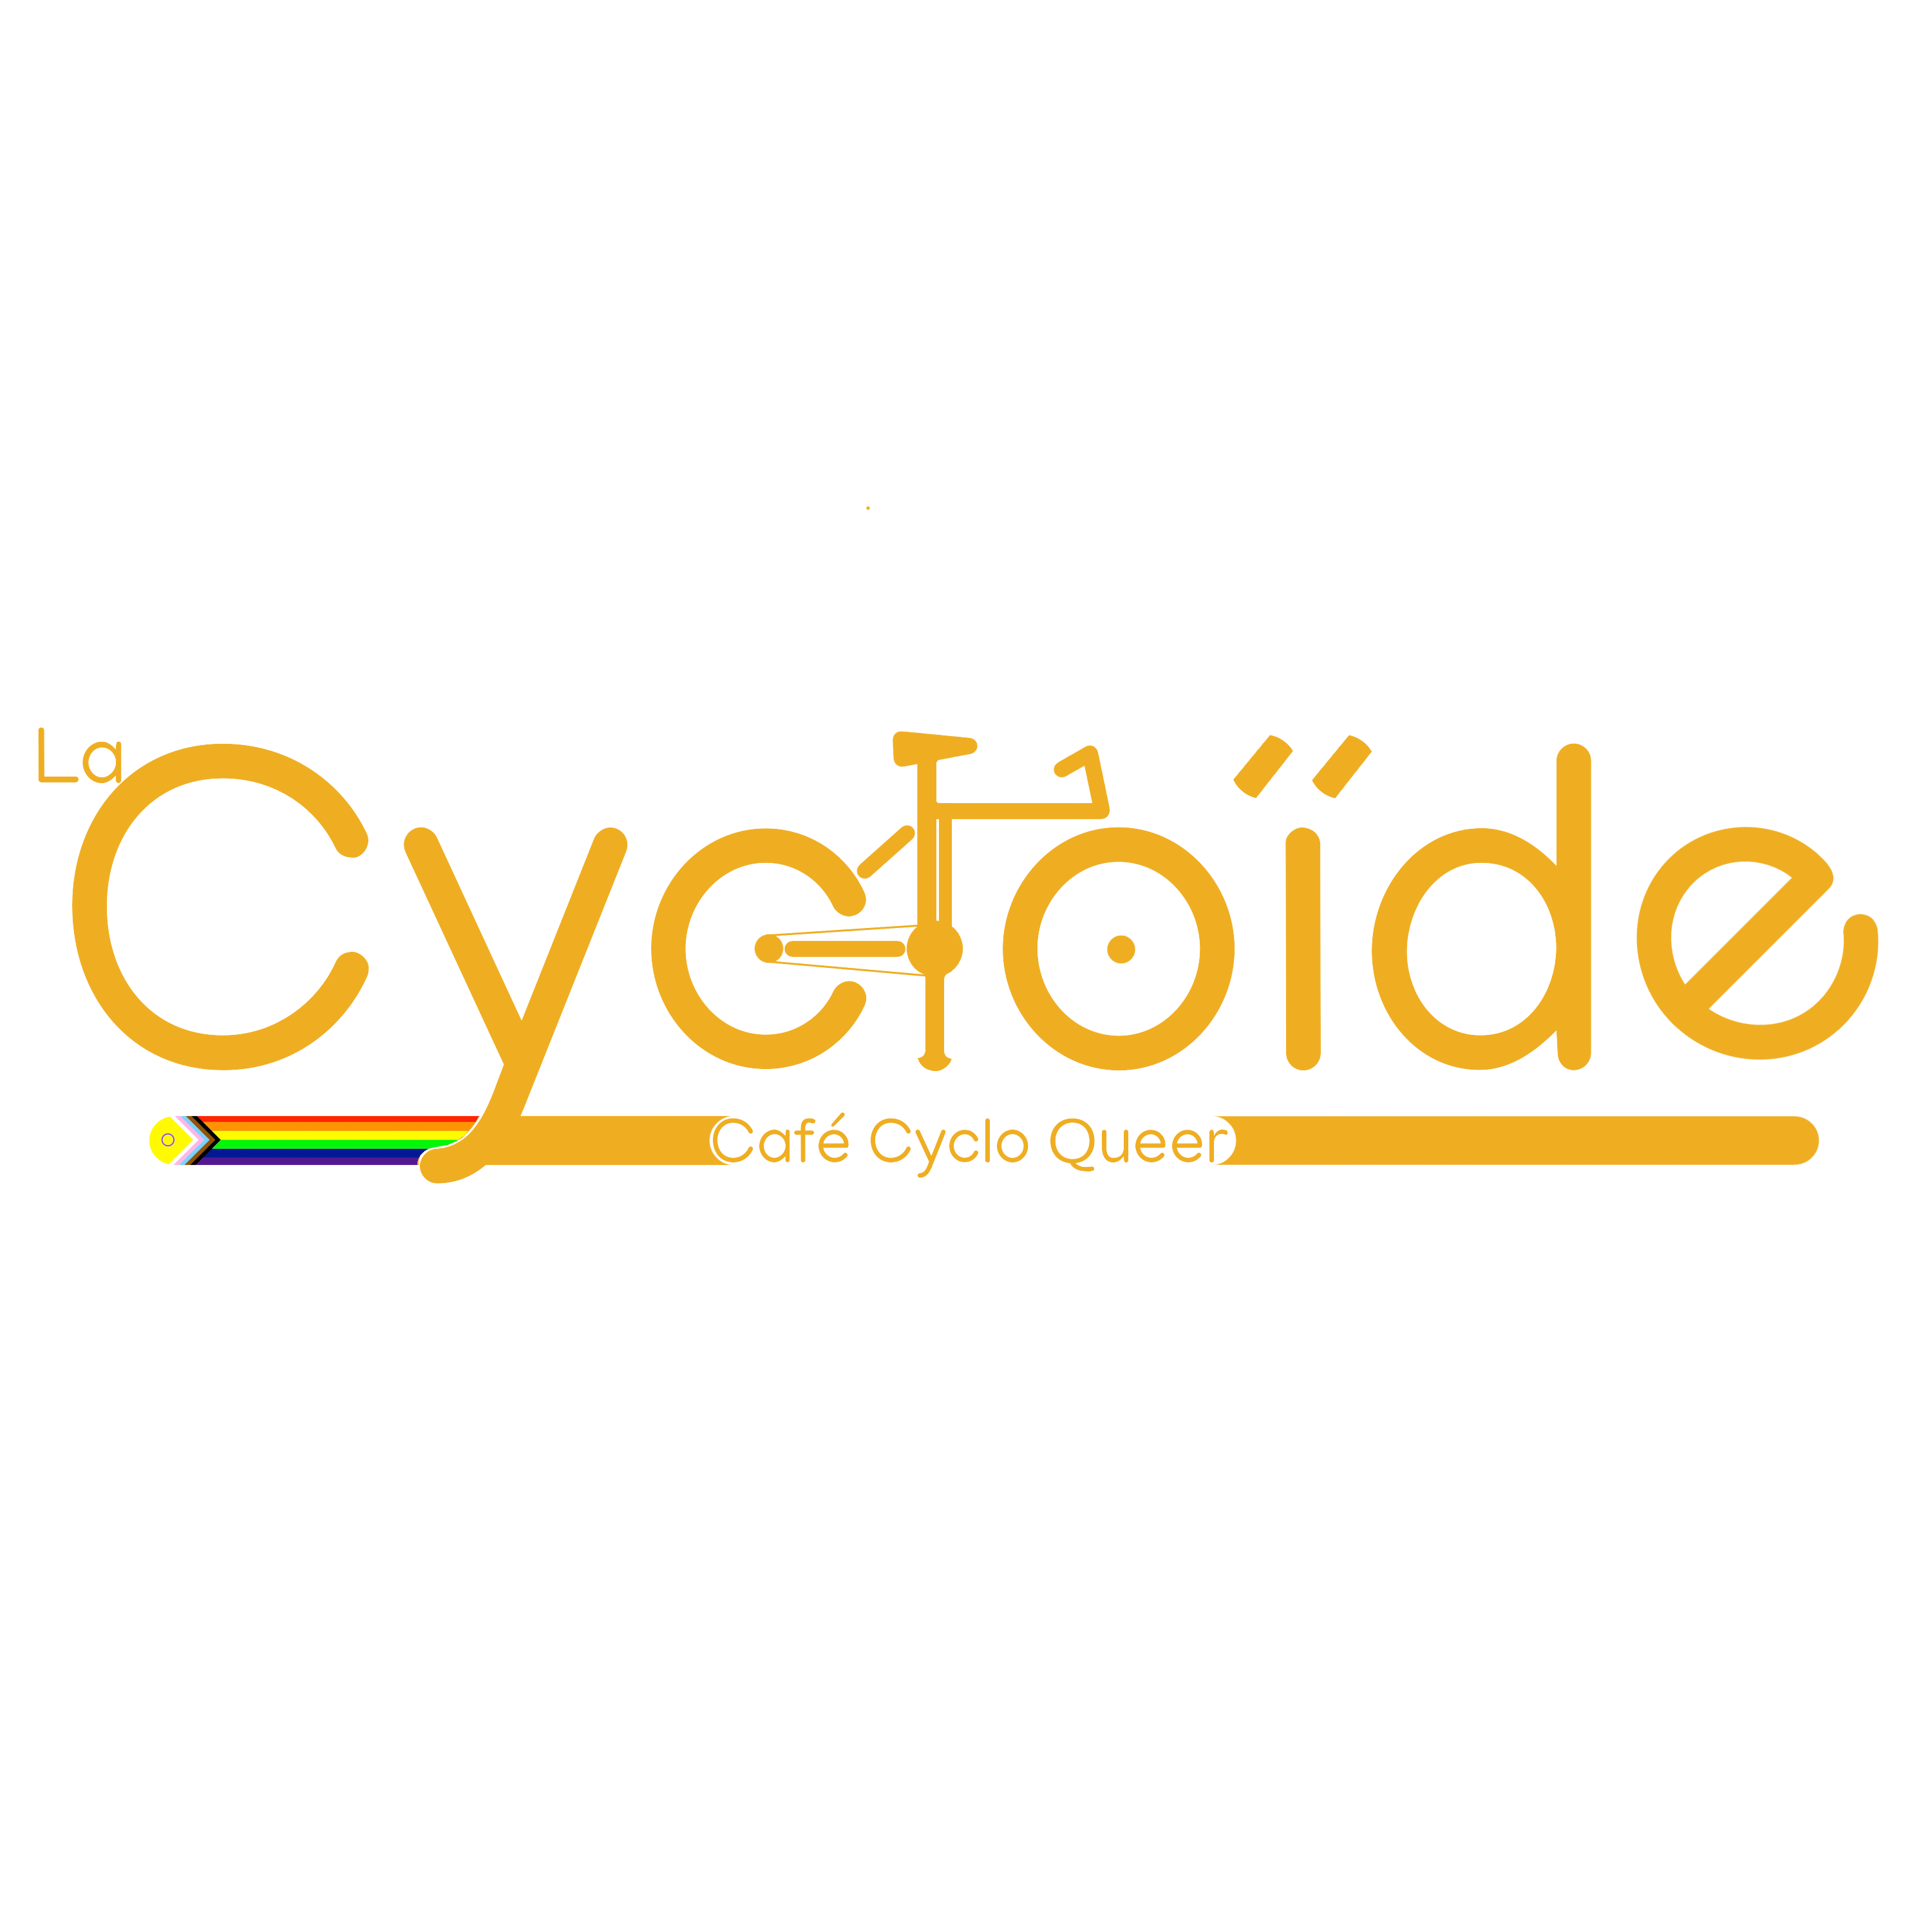 La Cycloïde - Café Cyclo Queer